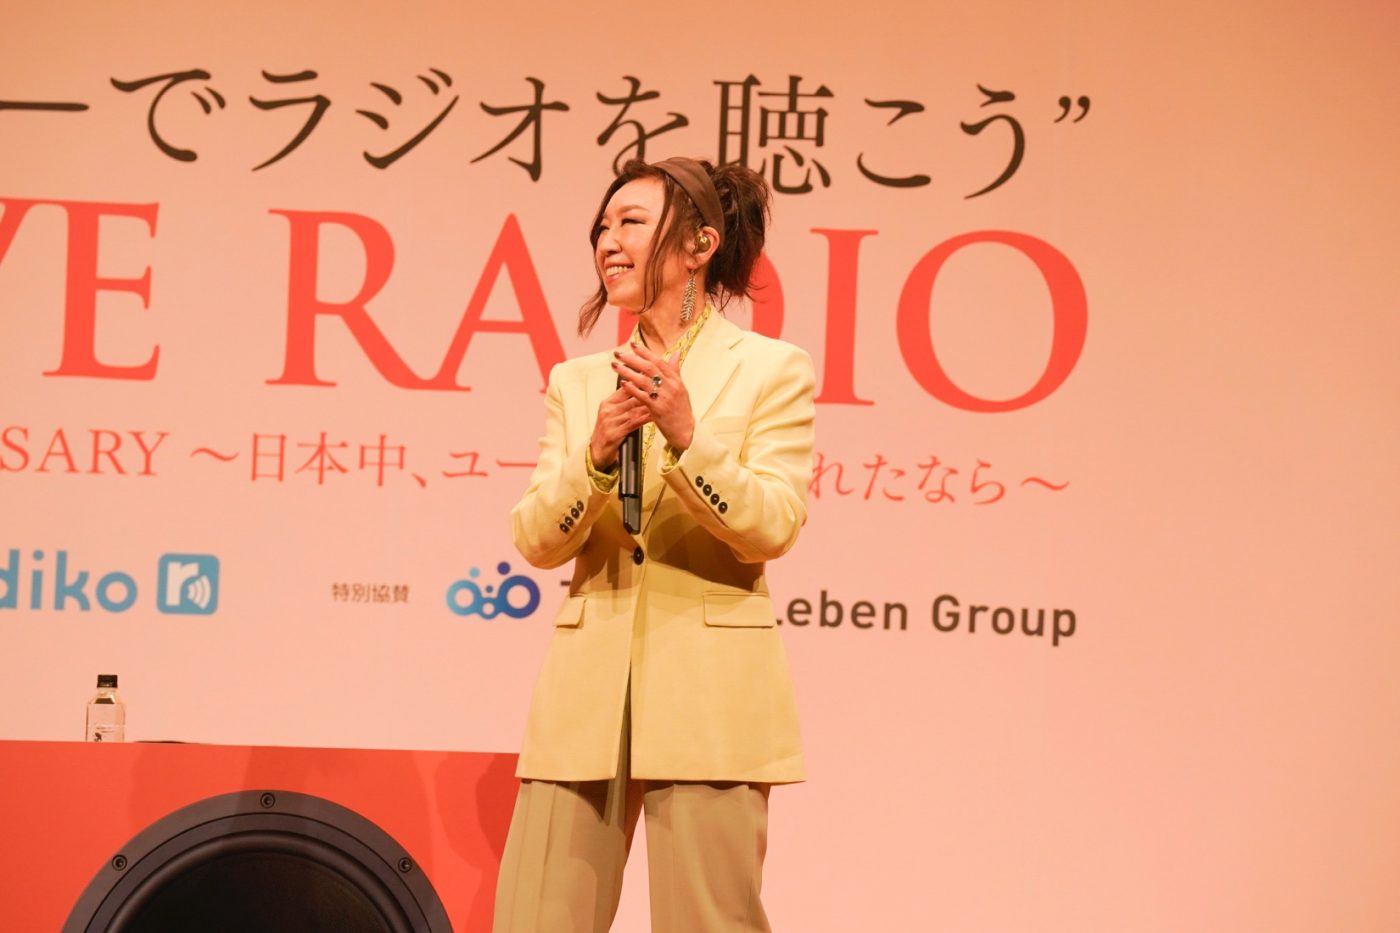 松任谷由実、“日本中、ユーミンに包まれたなら”のサブタイトルが付いたラジオの公開収録で感無量